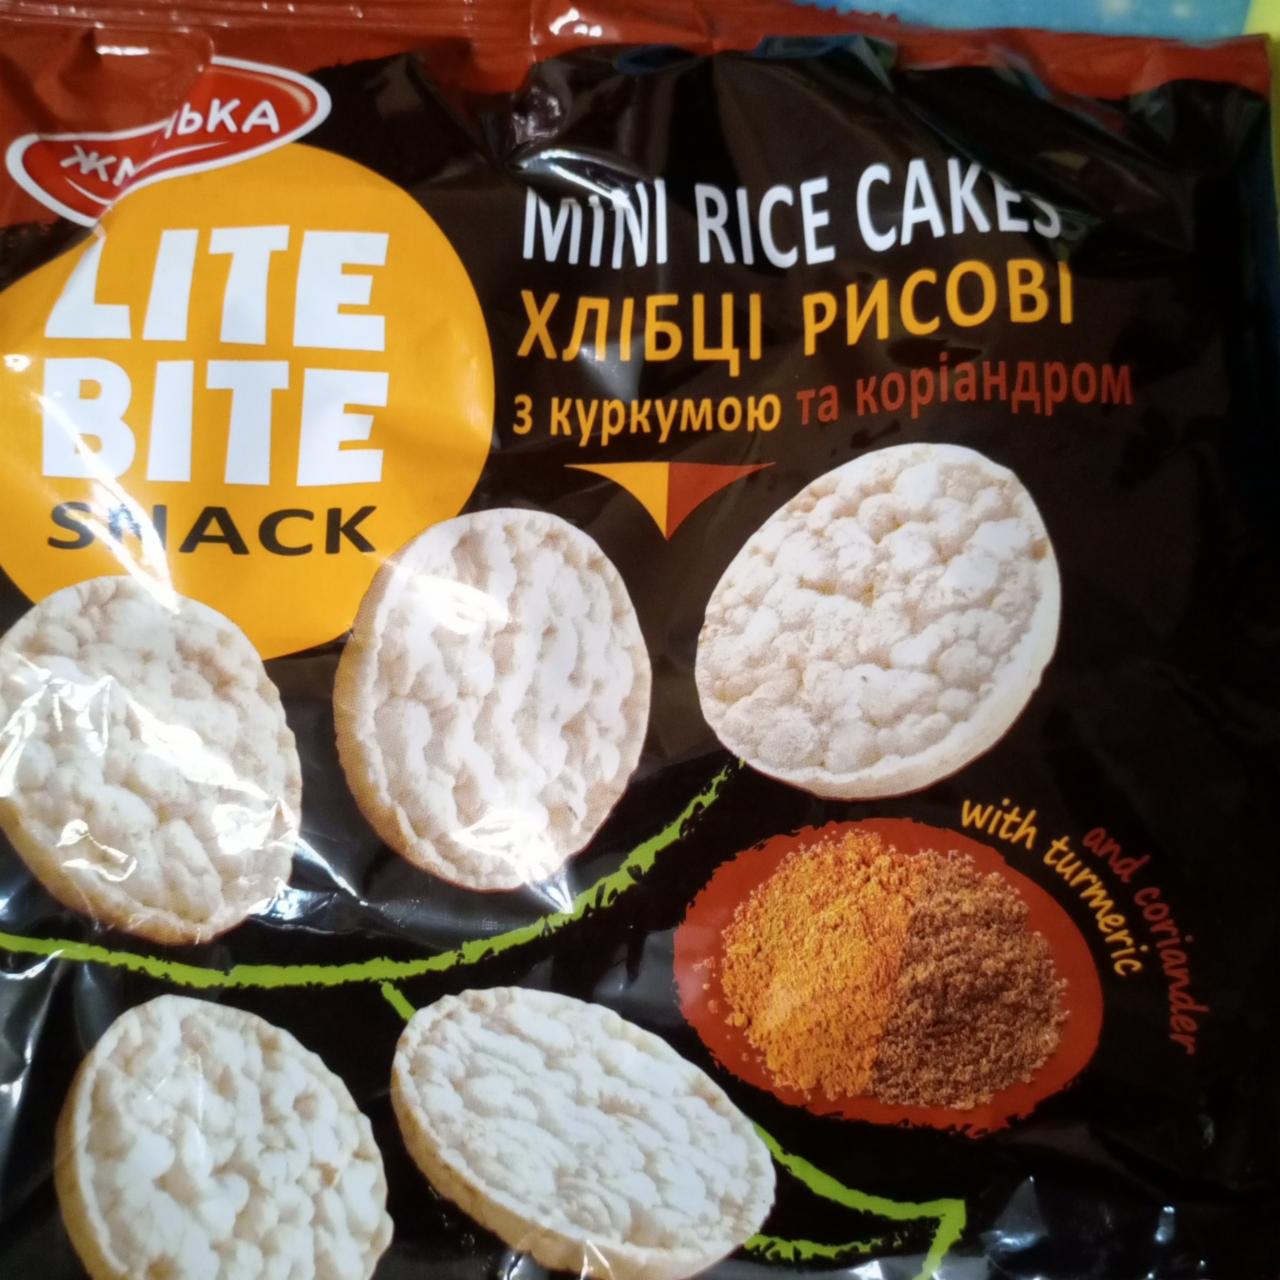 Фото - Хлібці рисові з куркумою та коріандром Lite Bite Жменька